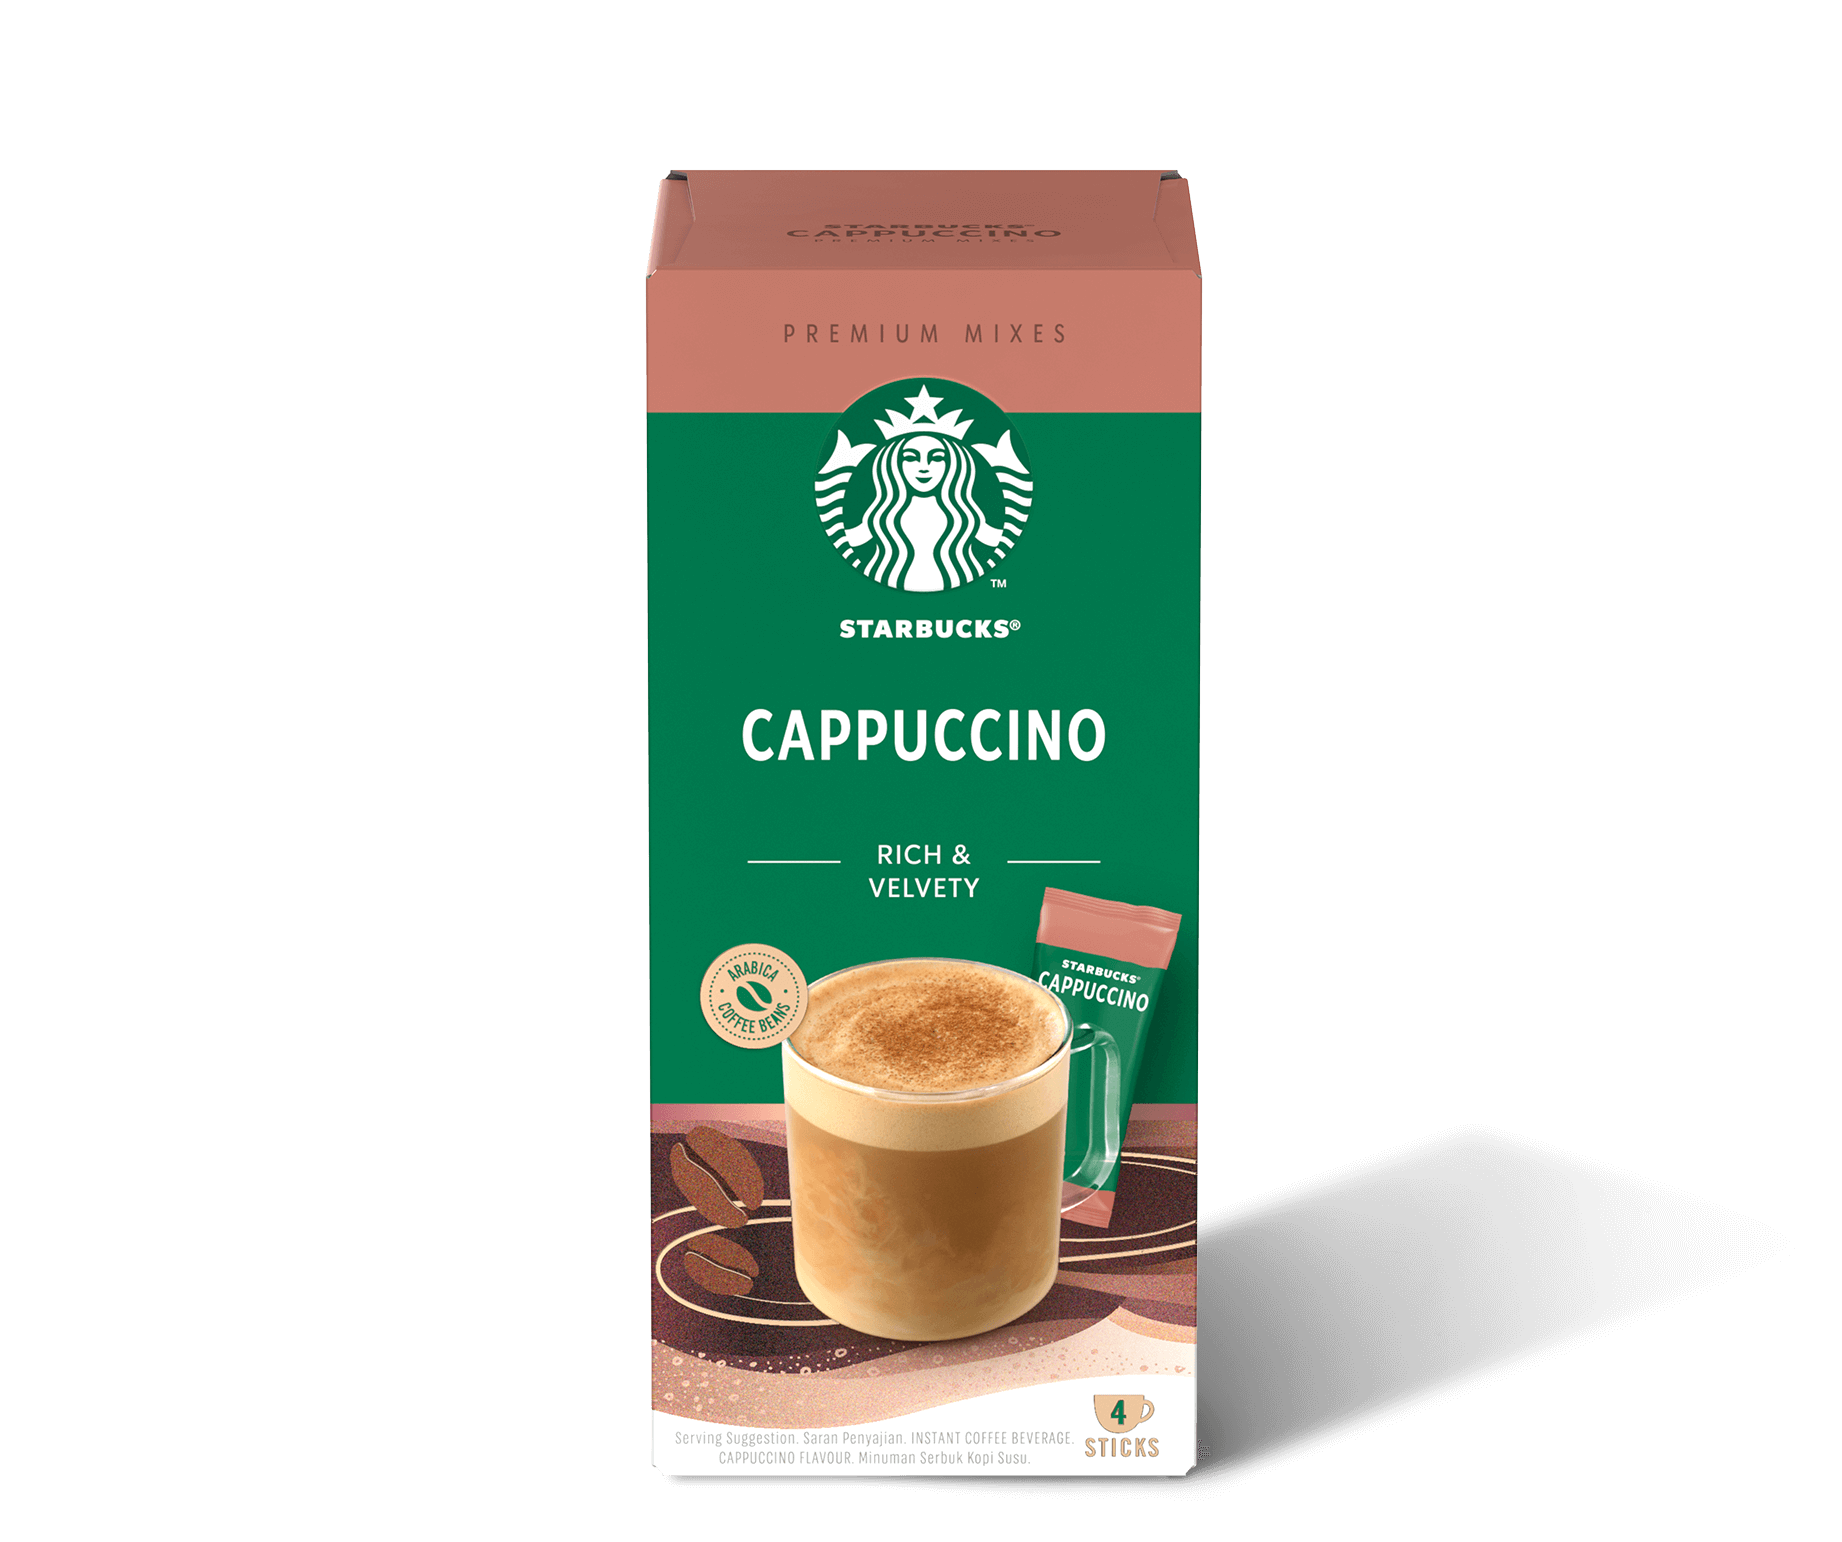 Premium Mixes Cappuccino